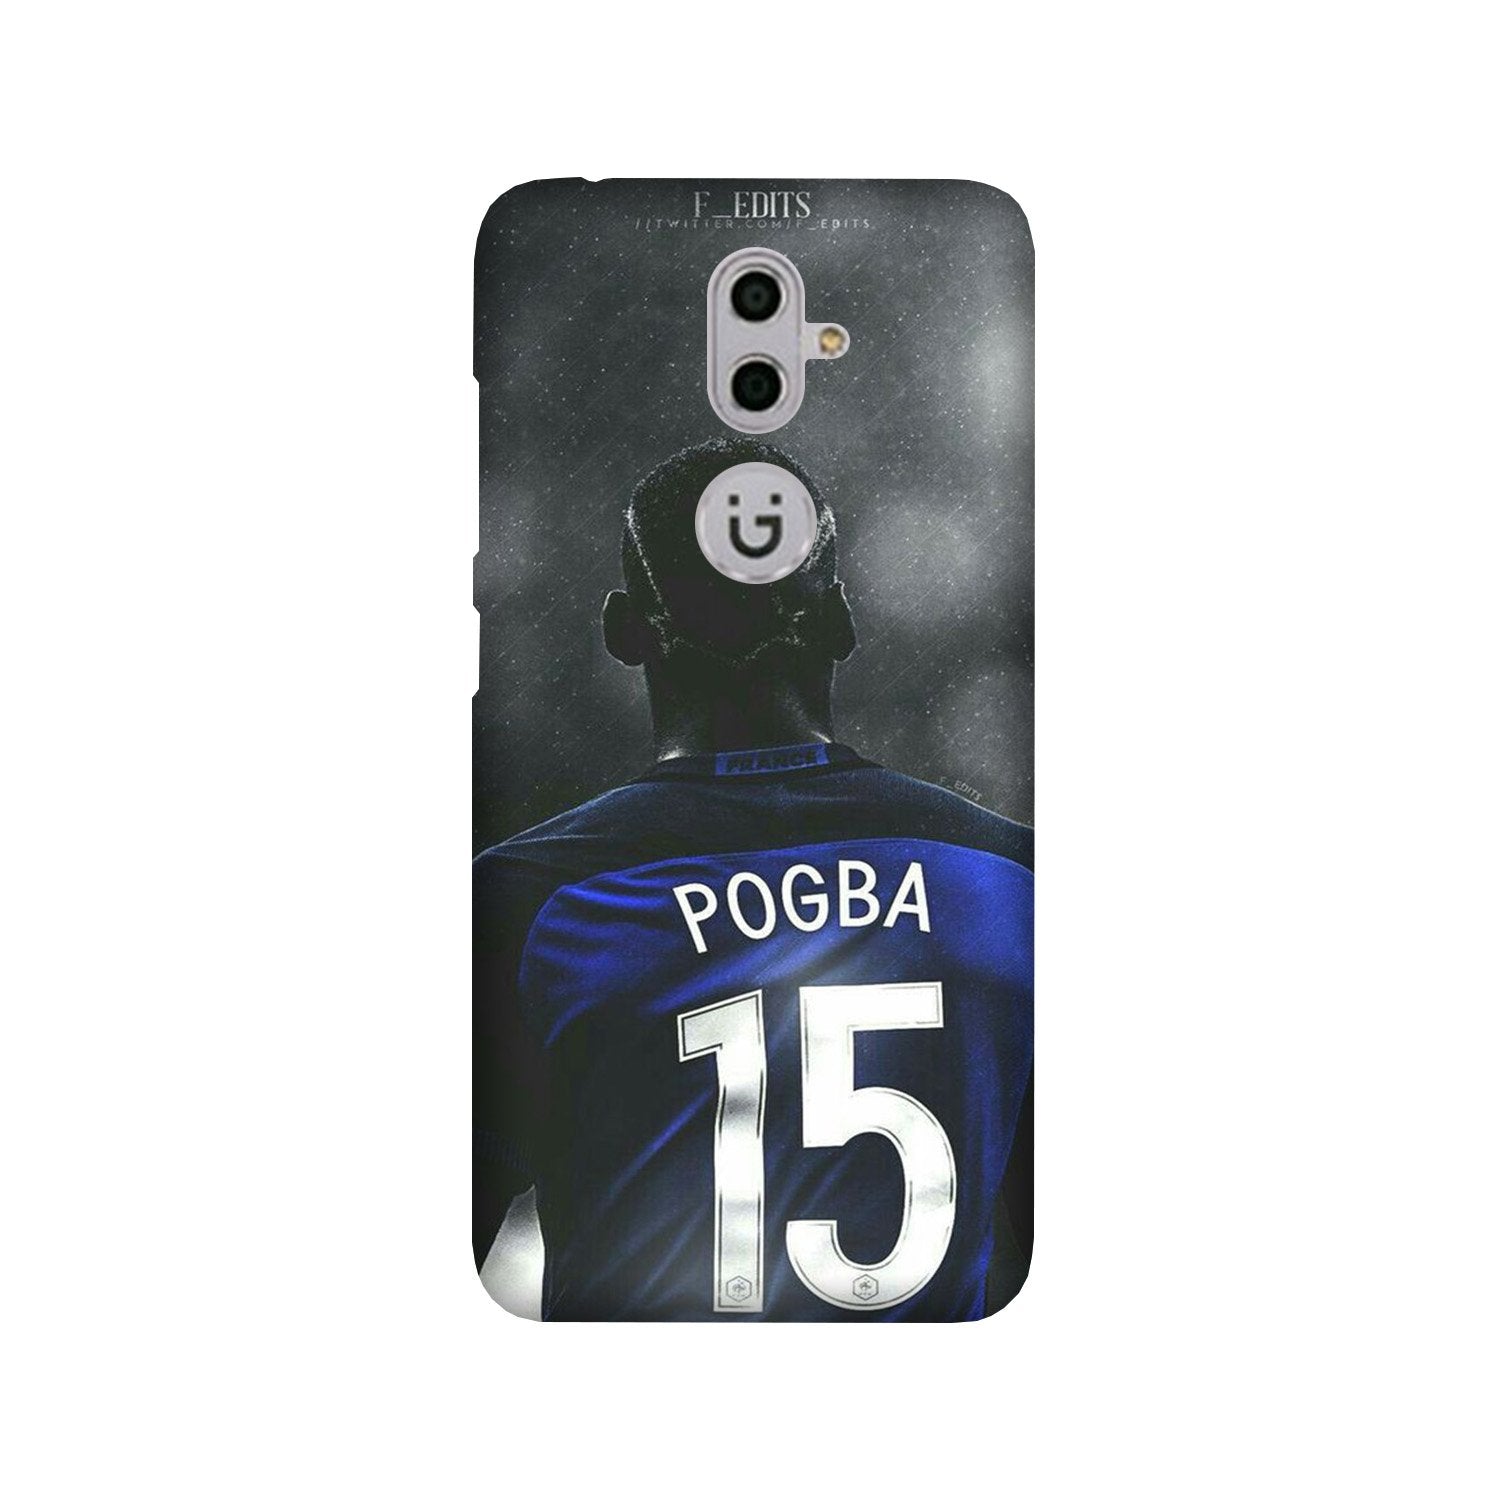 Pogba Case for Gionee S9(Design - 159)